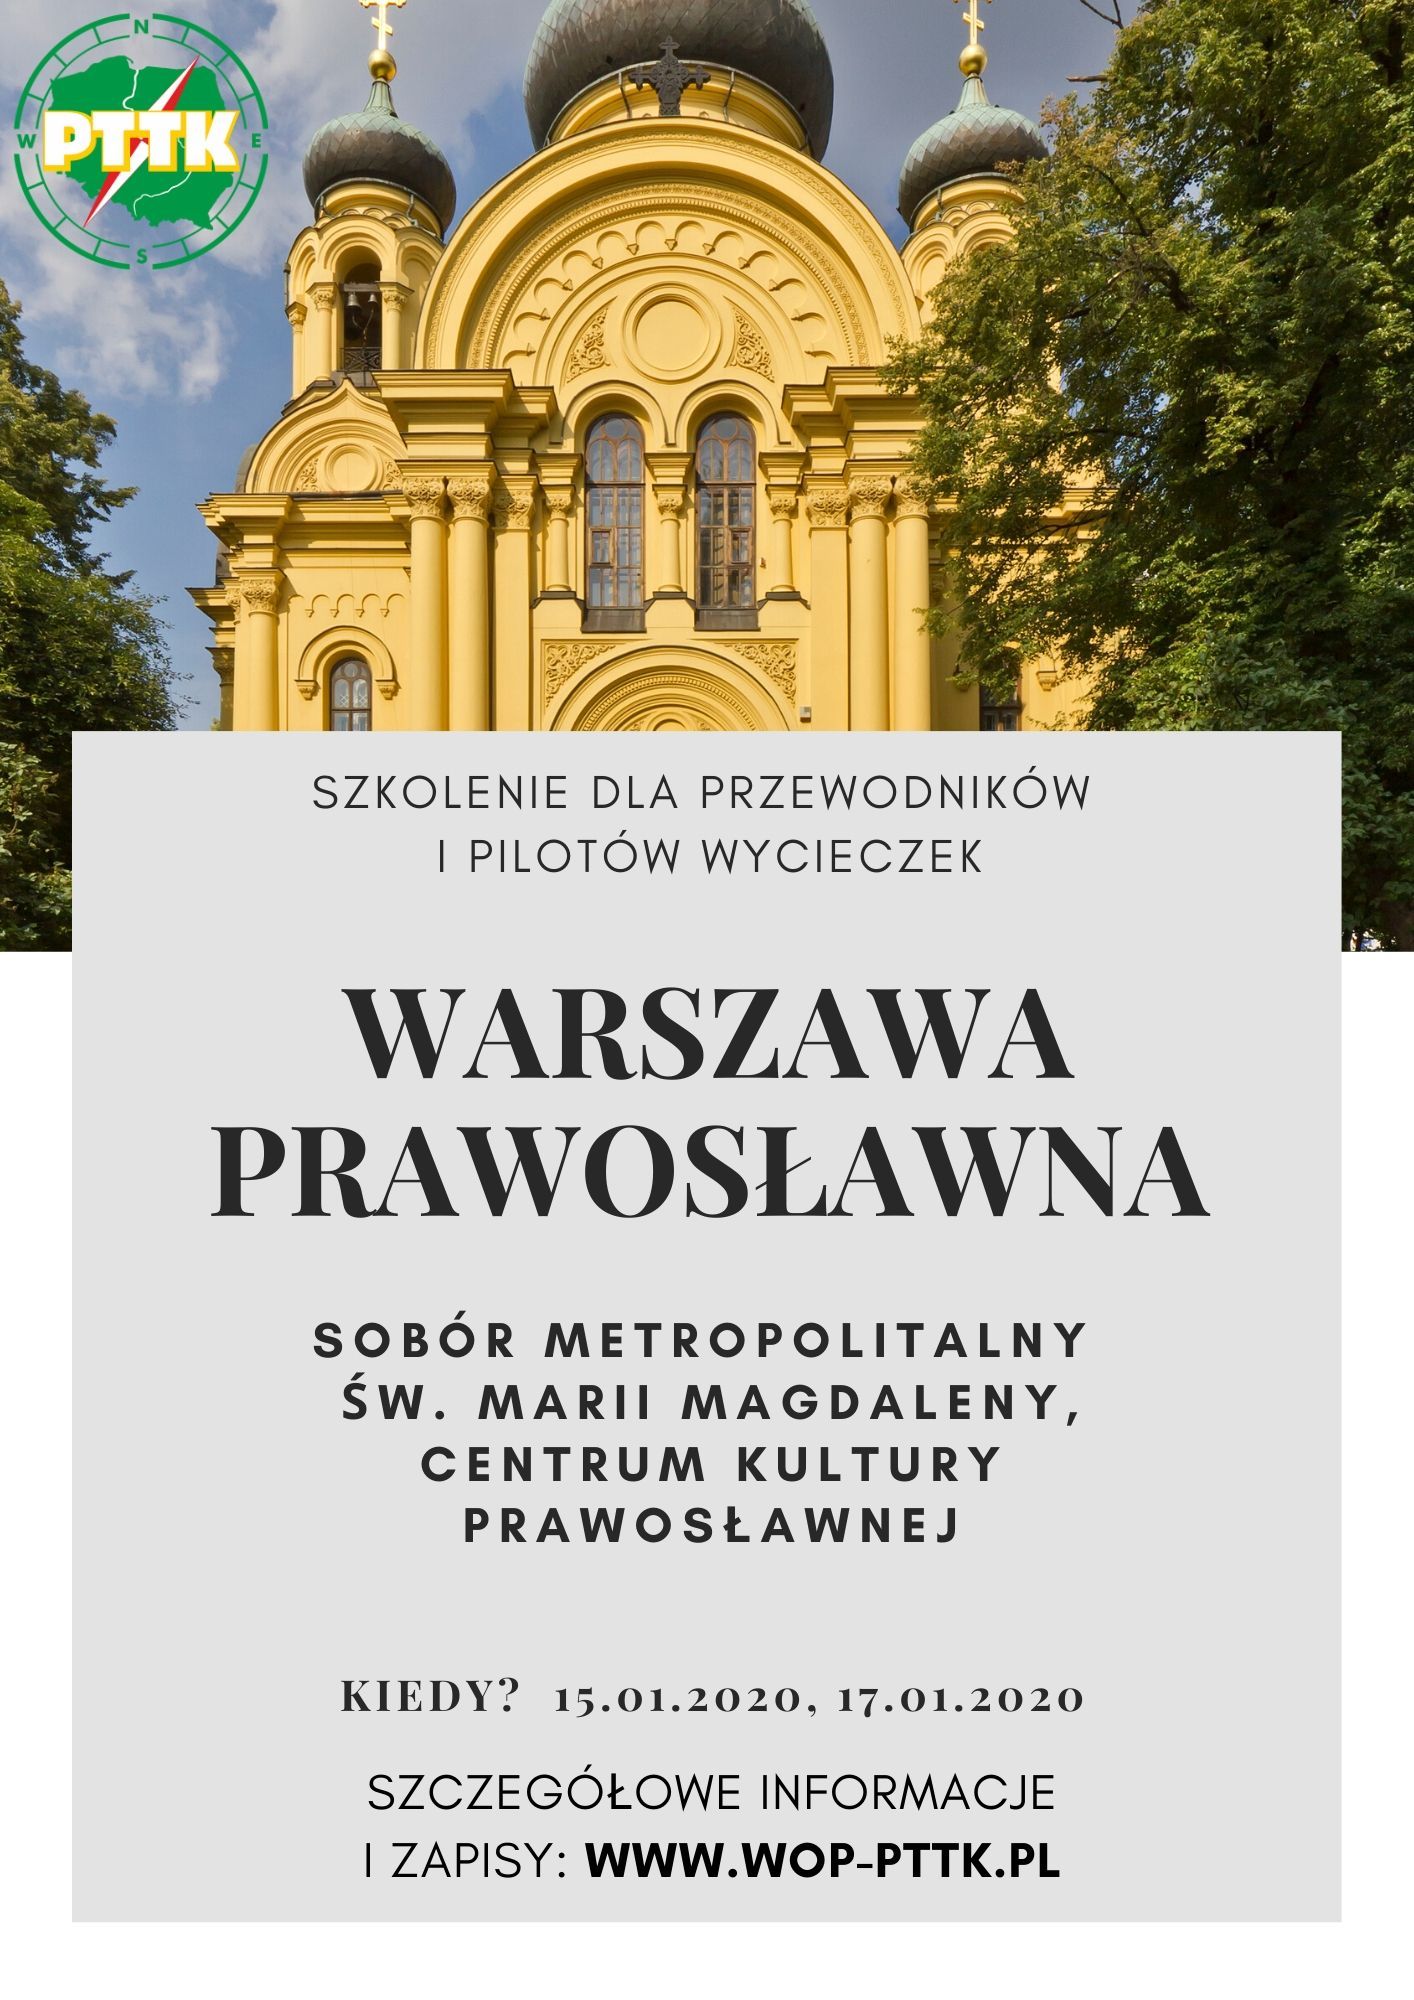 Warszawa prawosławna - szkolenie dla przewodników, absolwentów kursów przewodnickich  17.01.2020, 22.01.2020